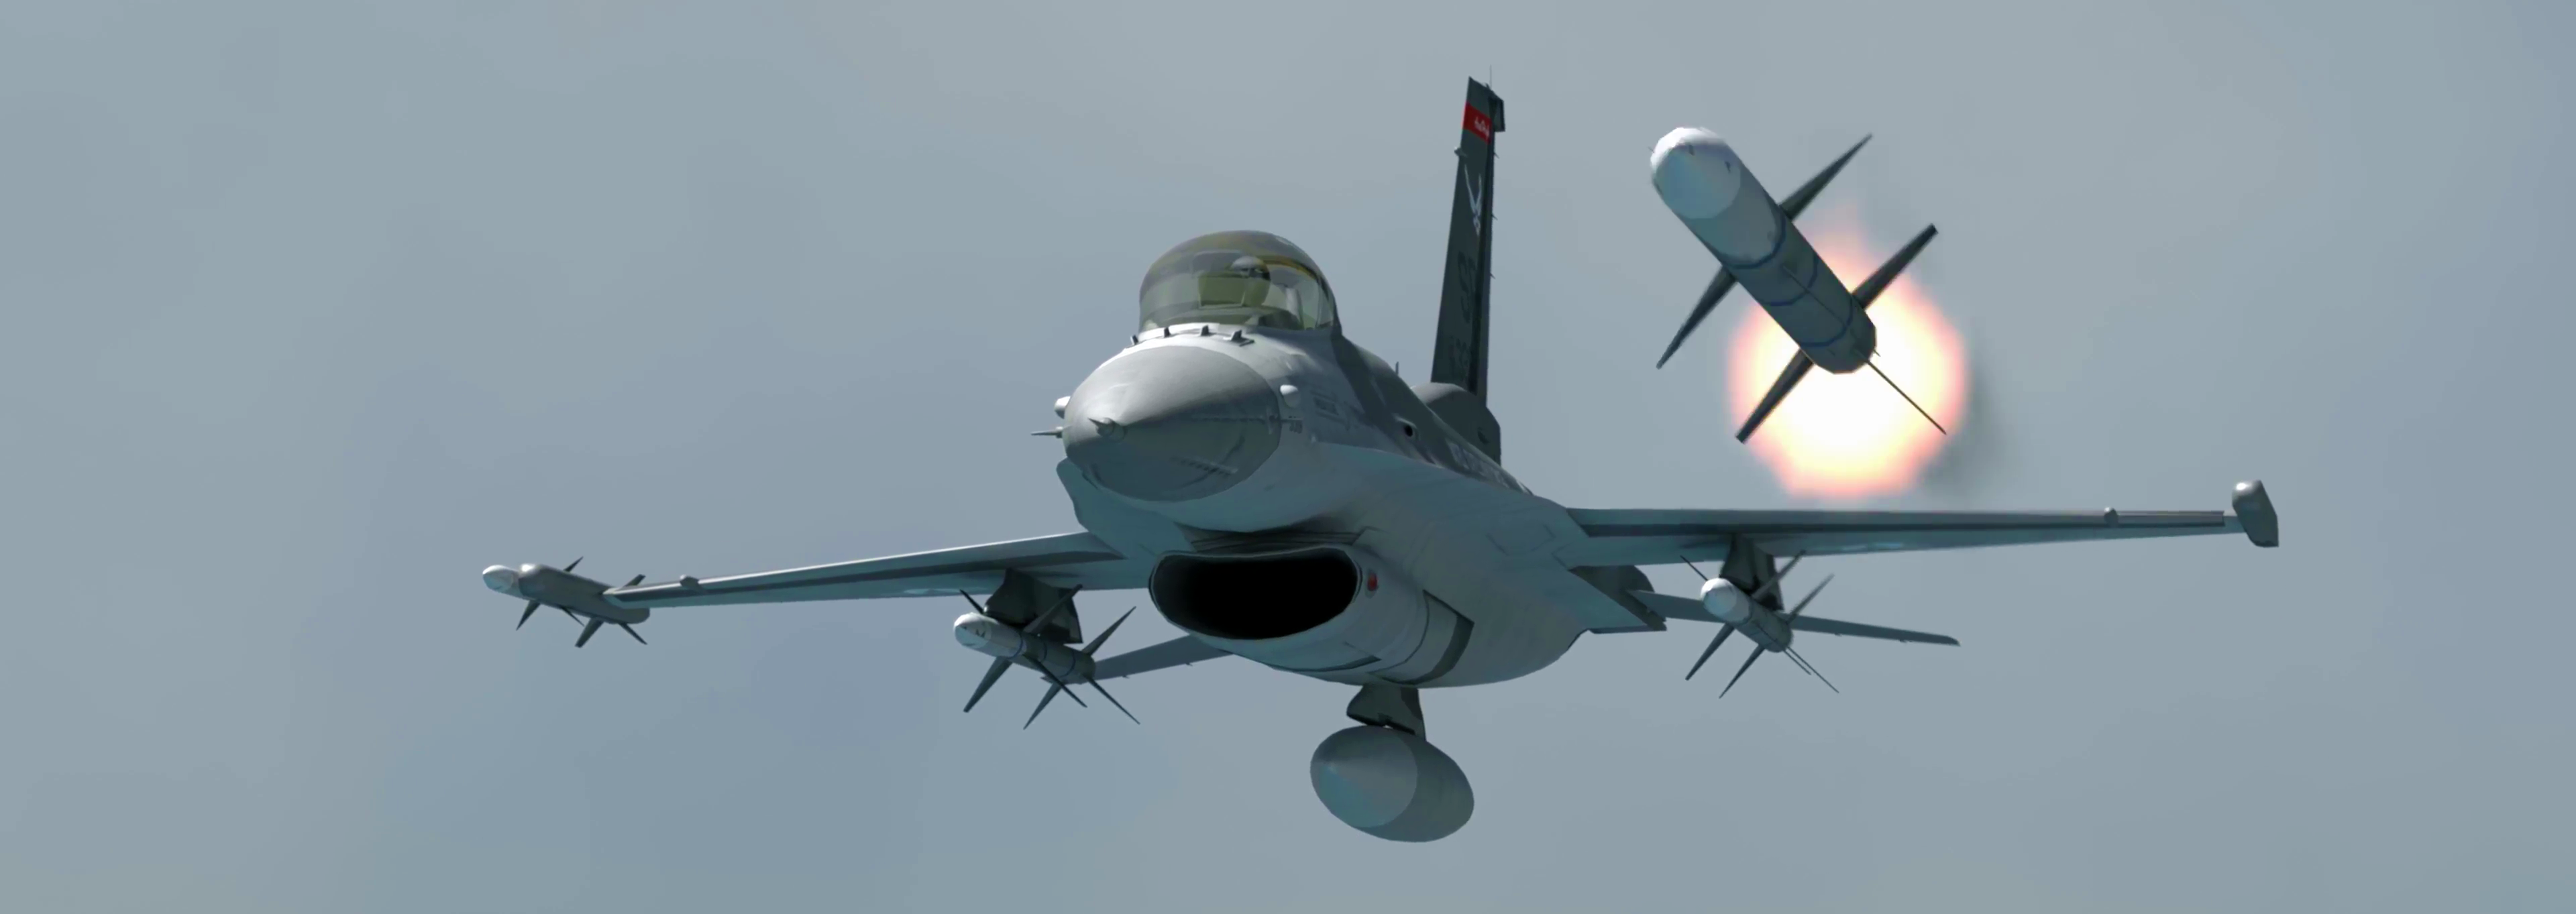 Μαχητικό F-16 καταρρίπτει drone: Μια σκηνή που έπρεπε ήδη να είχε συμβεί στο Αιγαίο (βίντεο)